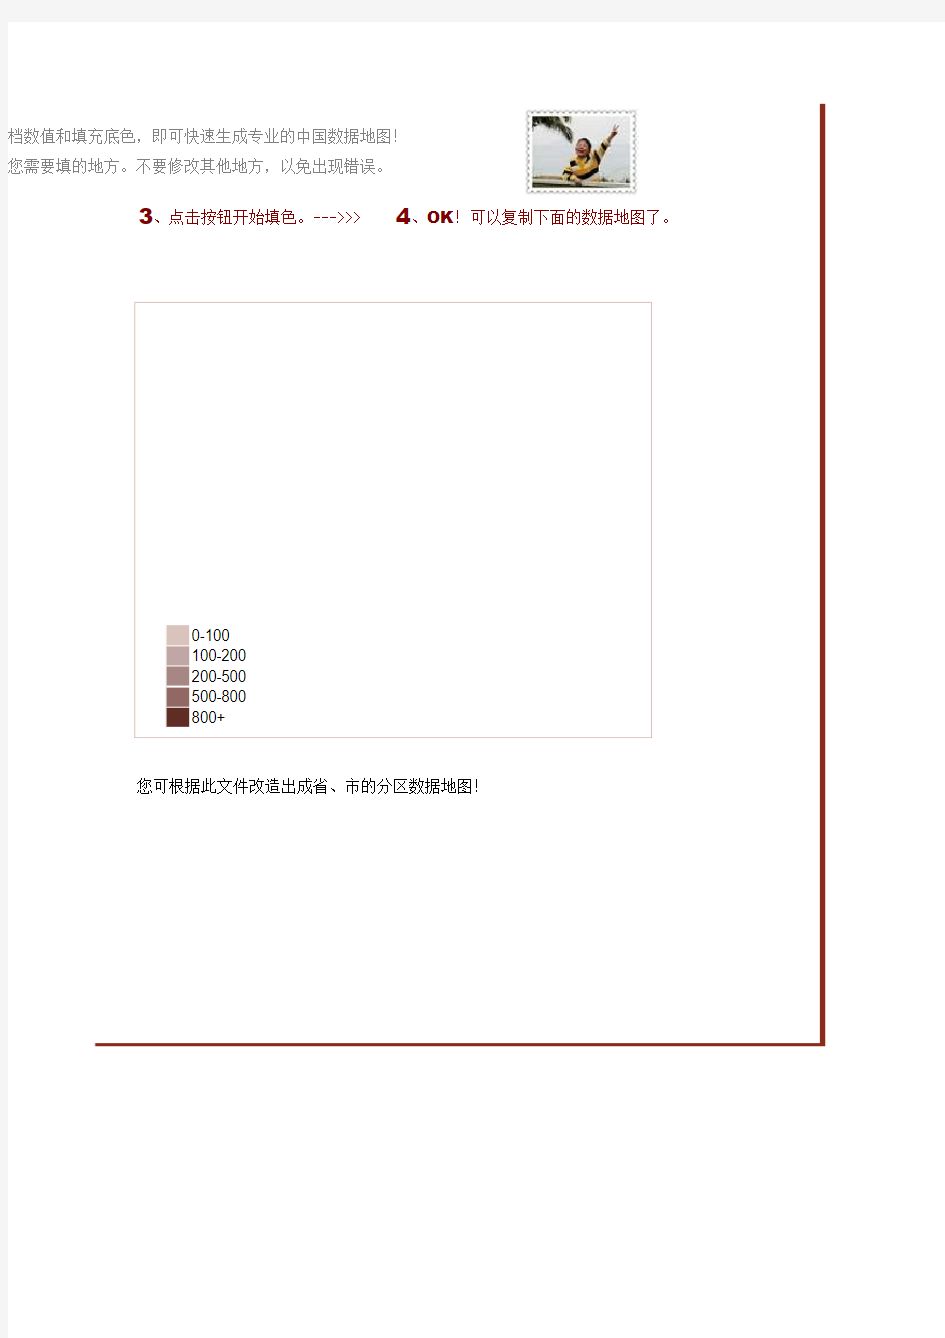 中国数据地图-到省-分档填色